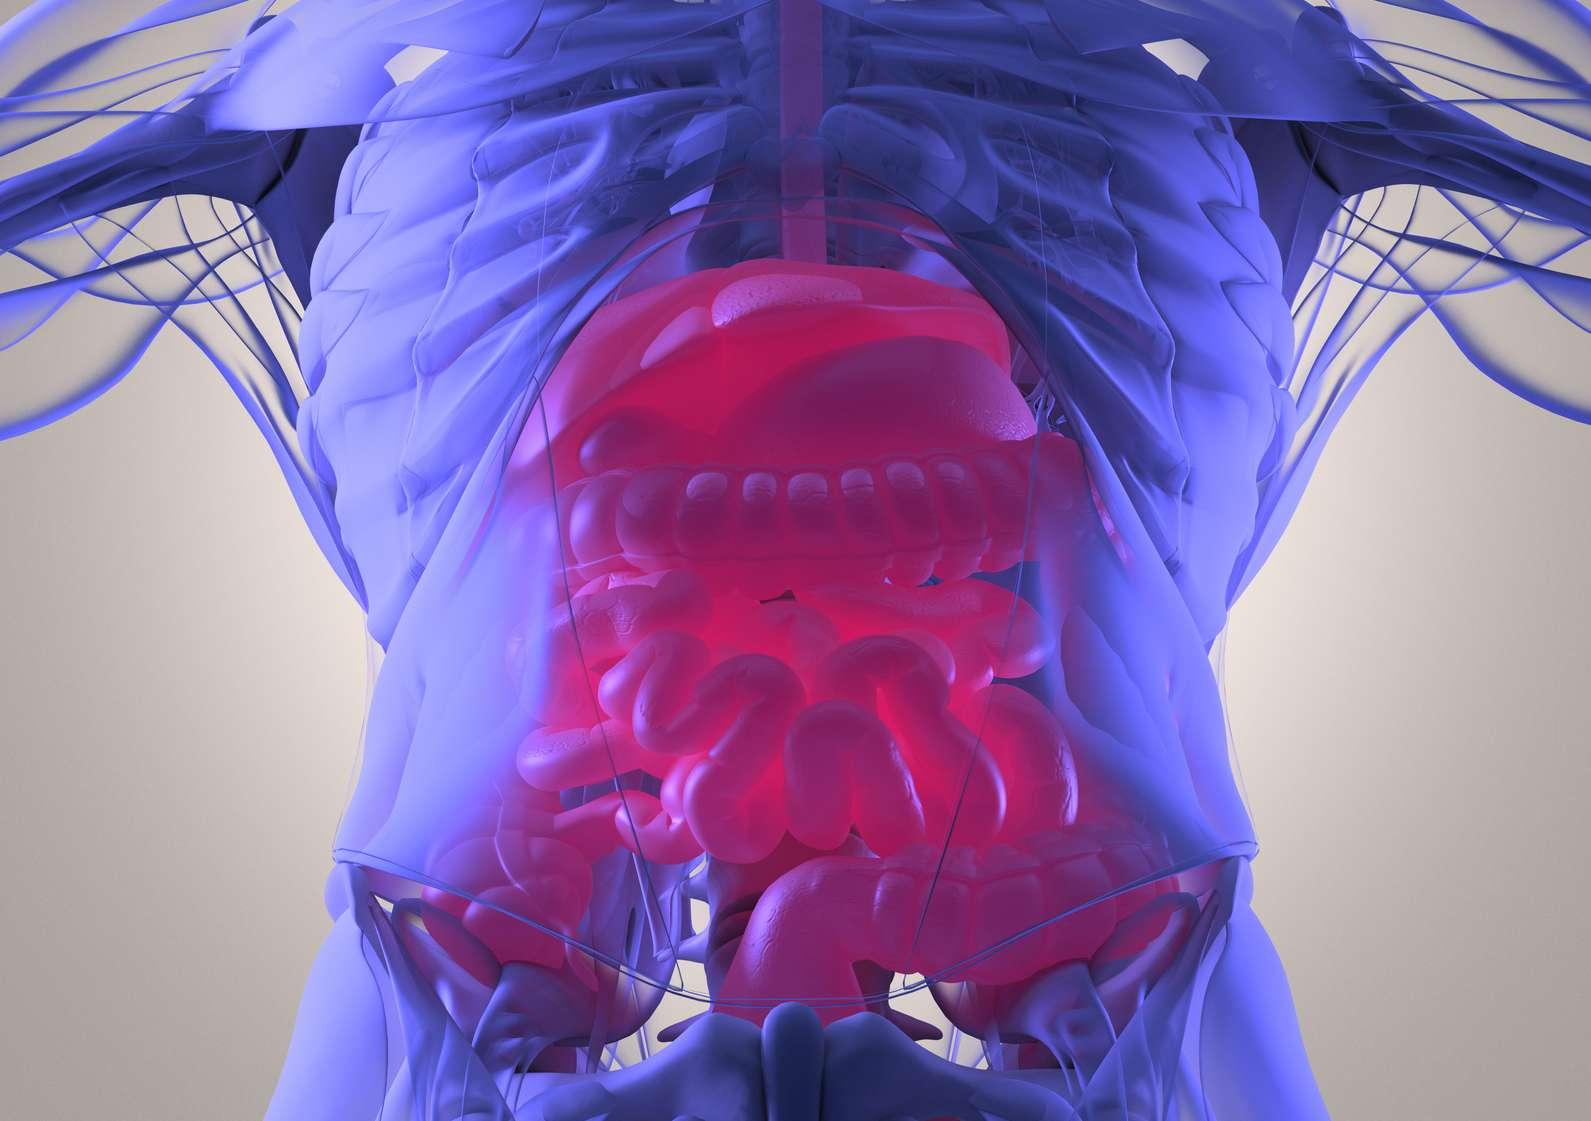 Verdauungssystem, menschliche Anatomie, Röntgen wie futuristischer Scan. 3D-Illustration.